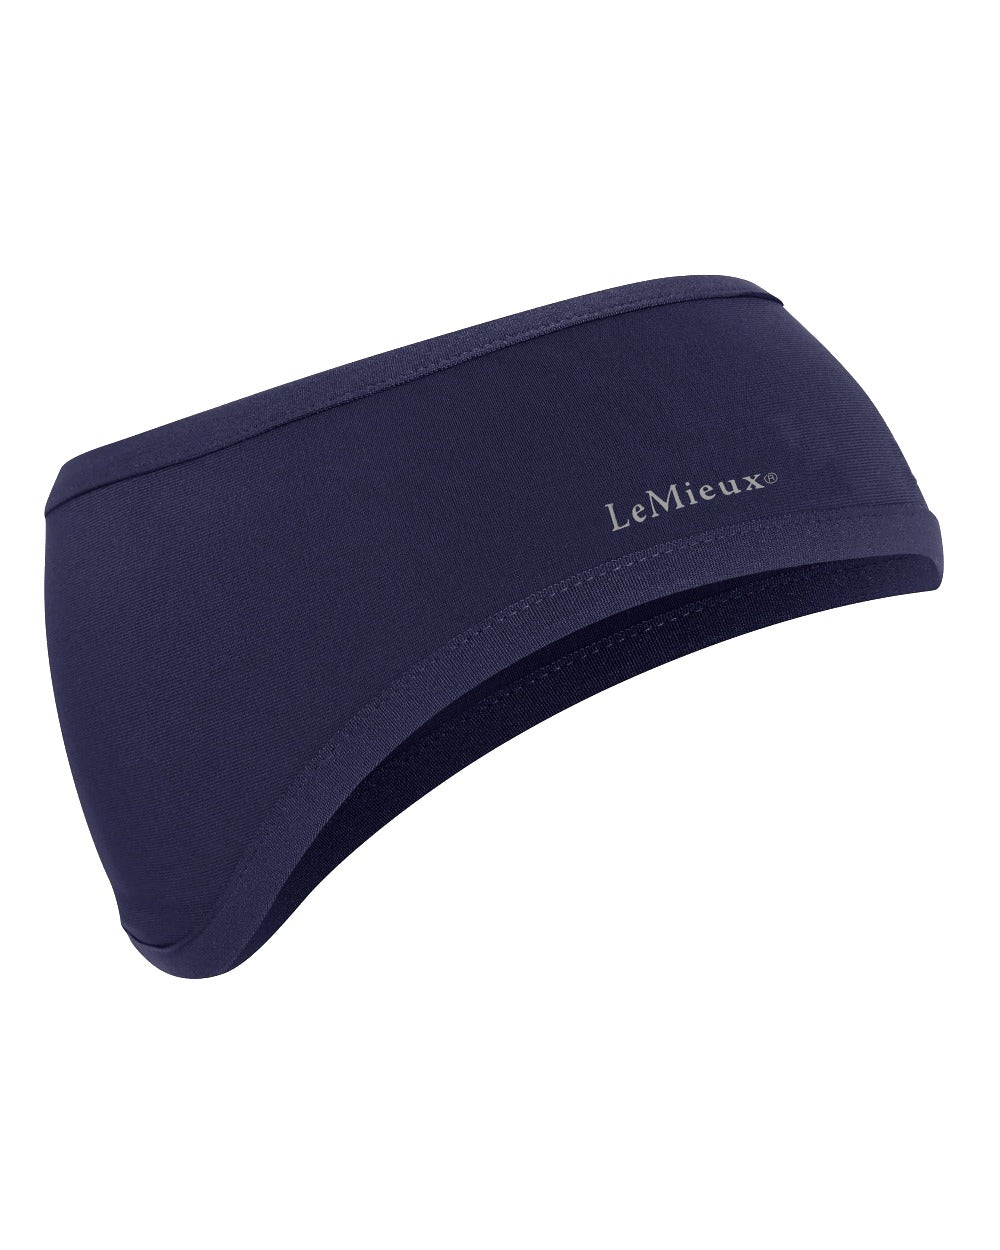 Indigo coloured LeMieux Ear Warmer Headband on white background 